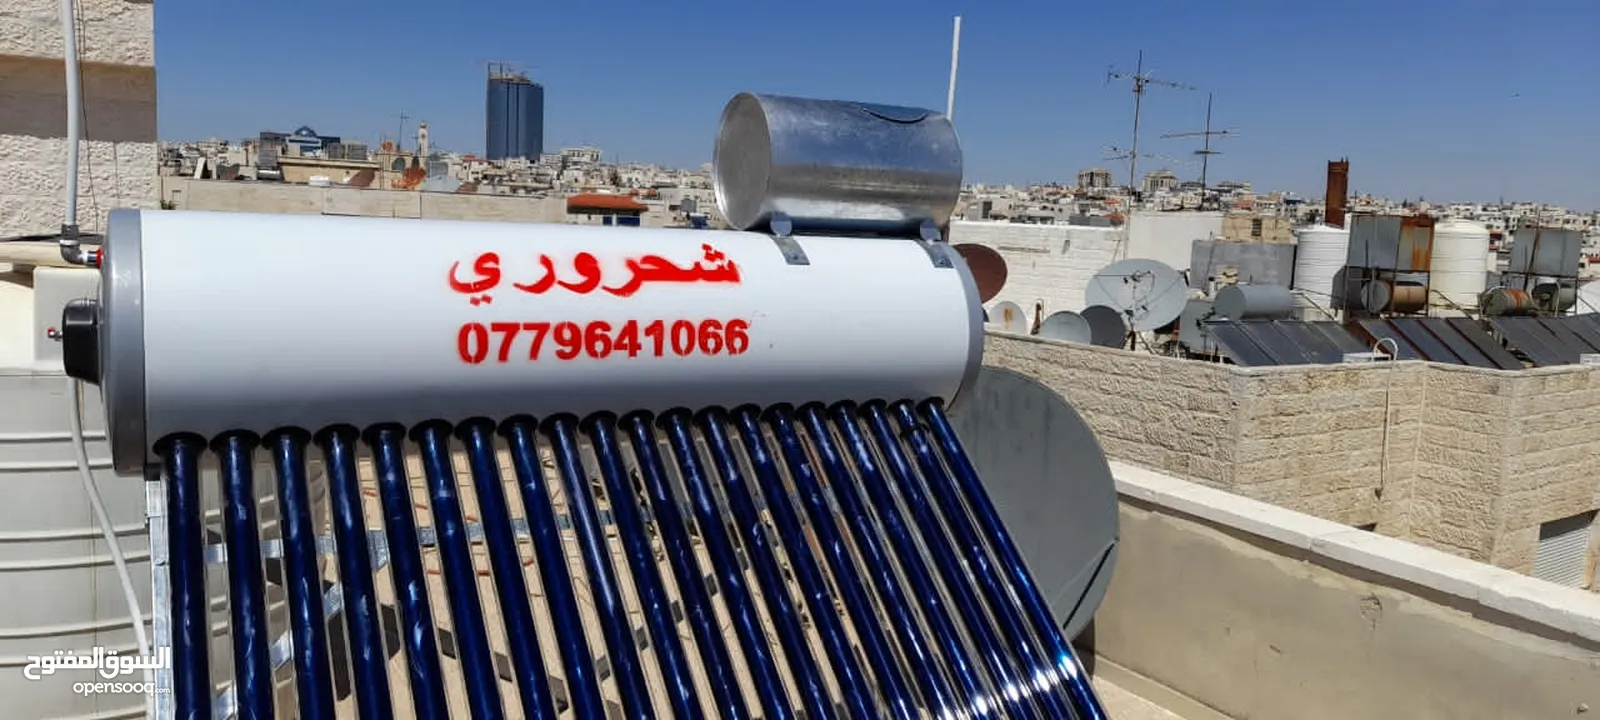 موسسة ناصر الشحروري للسخانات الشمسية